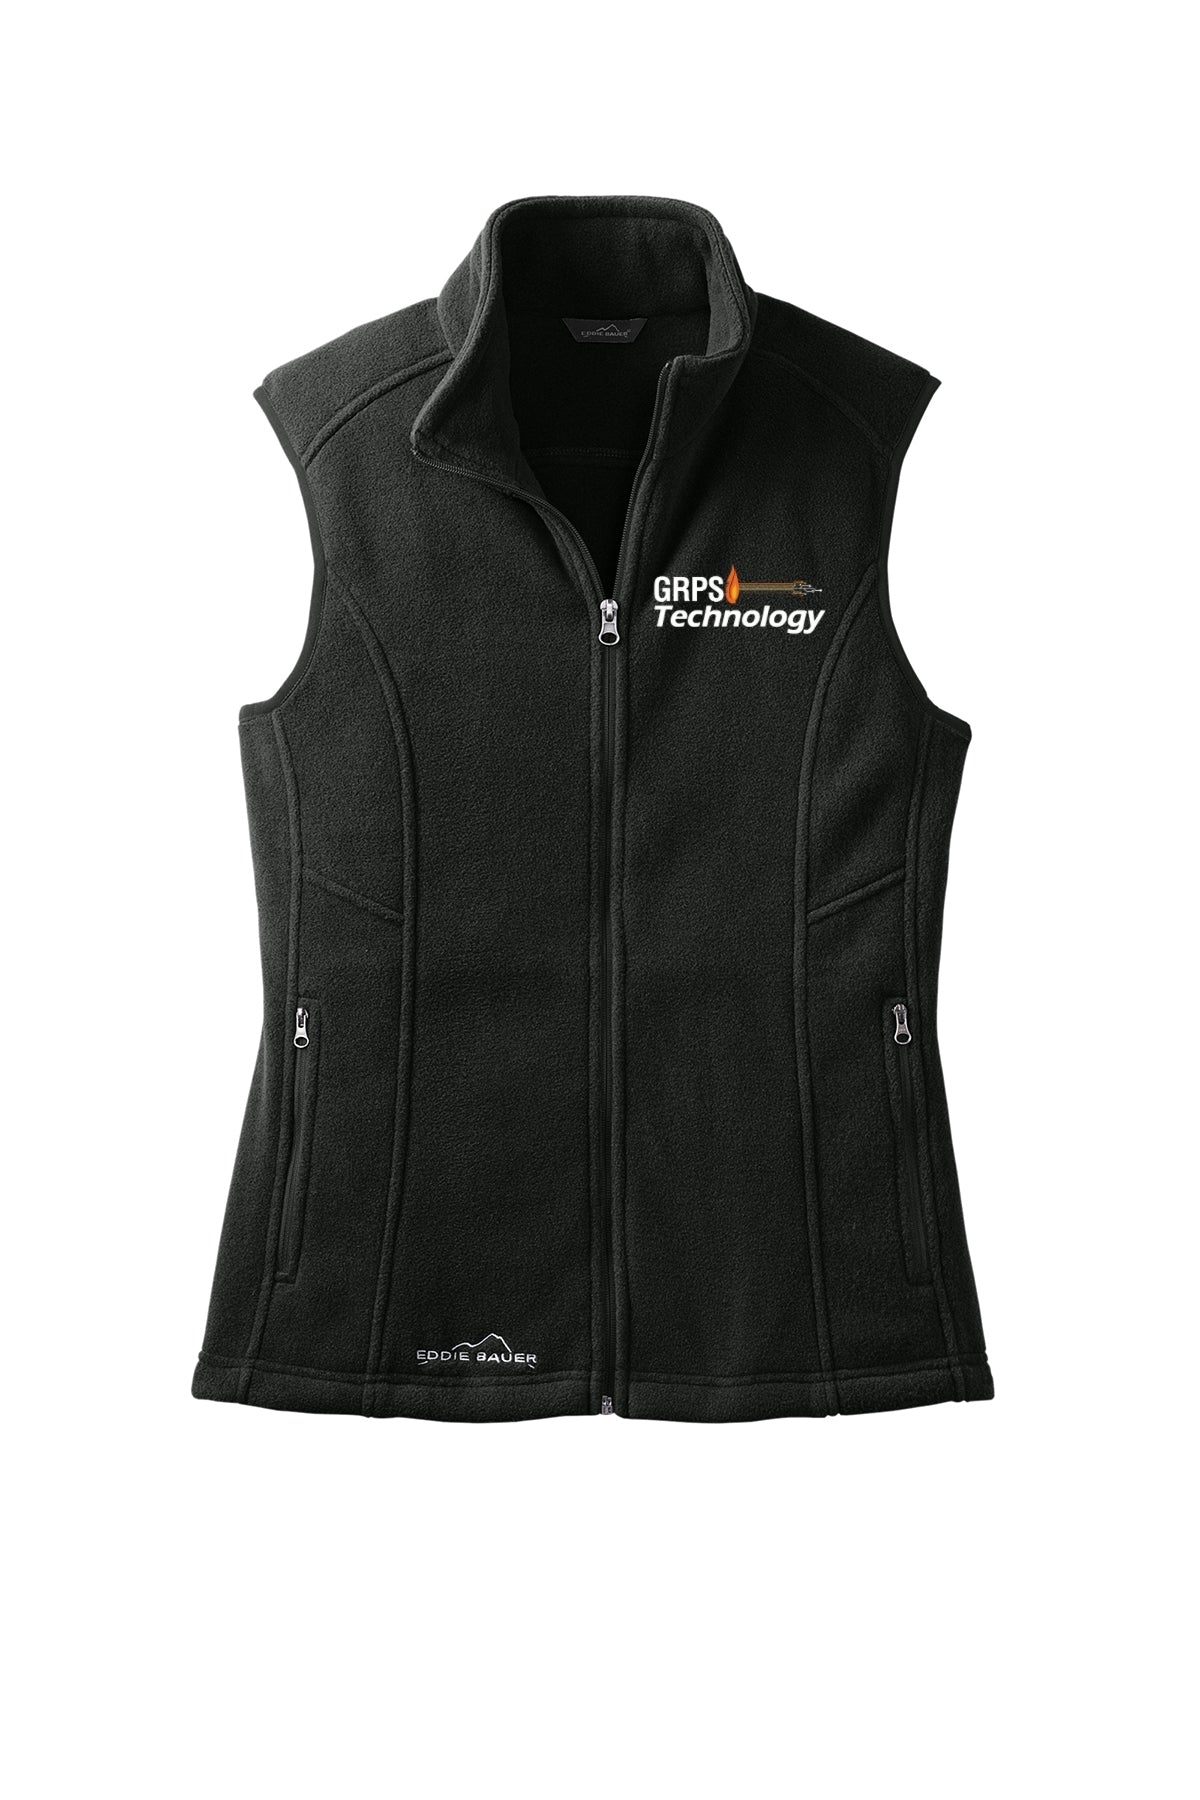 MIS-Technology Eddie Bauer® - Ladies Fleece Vest